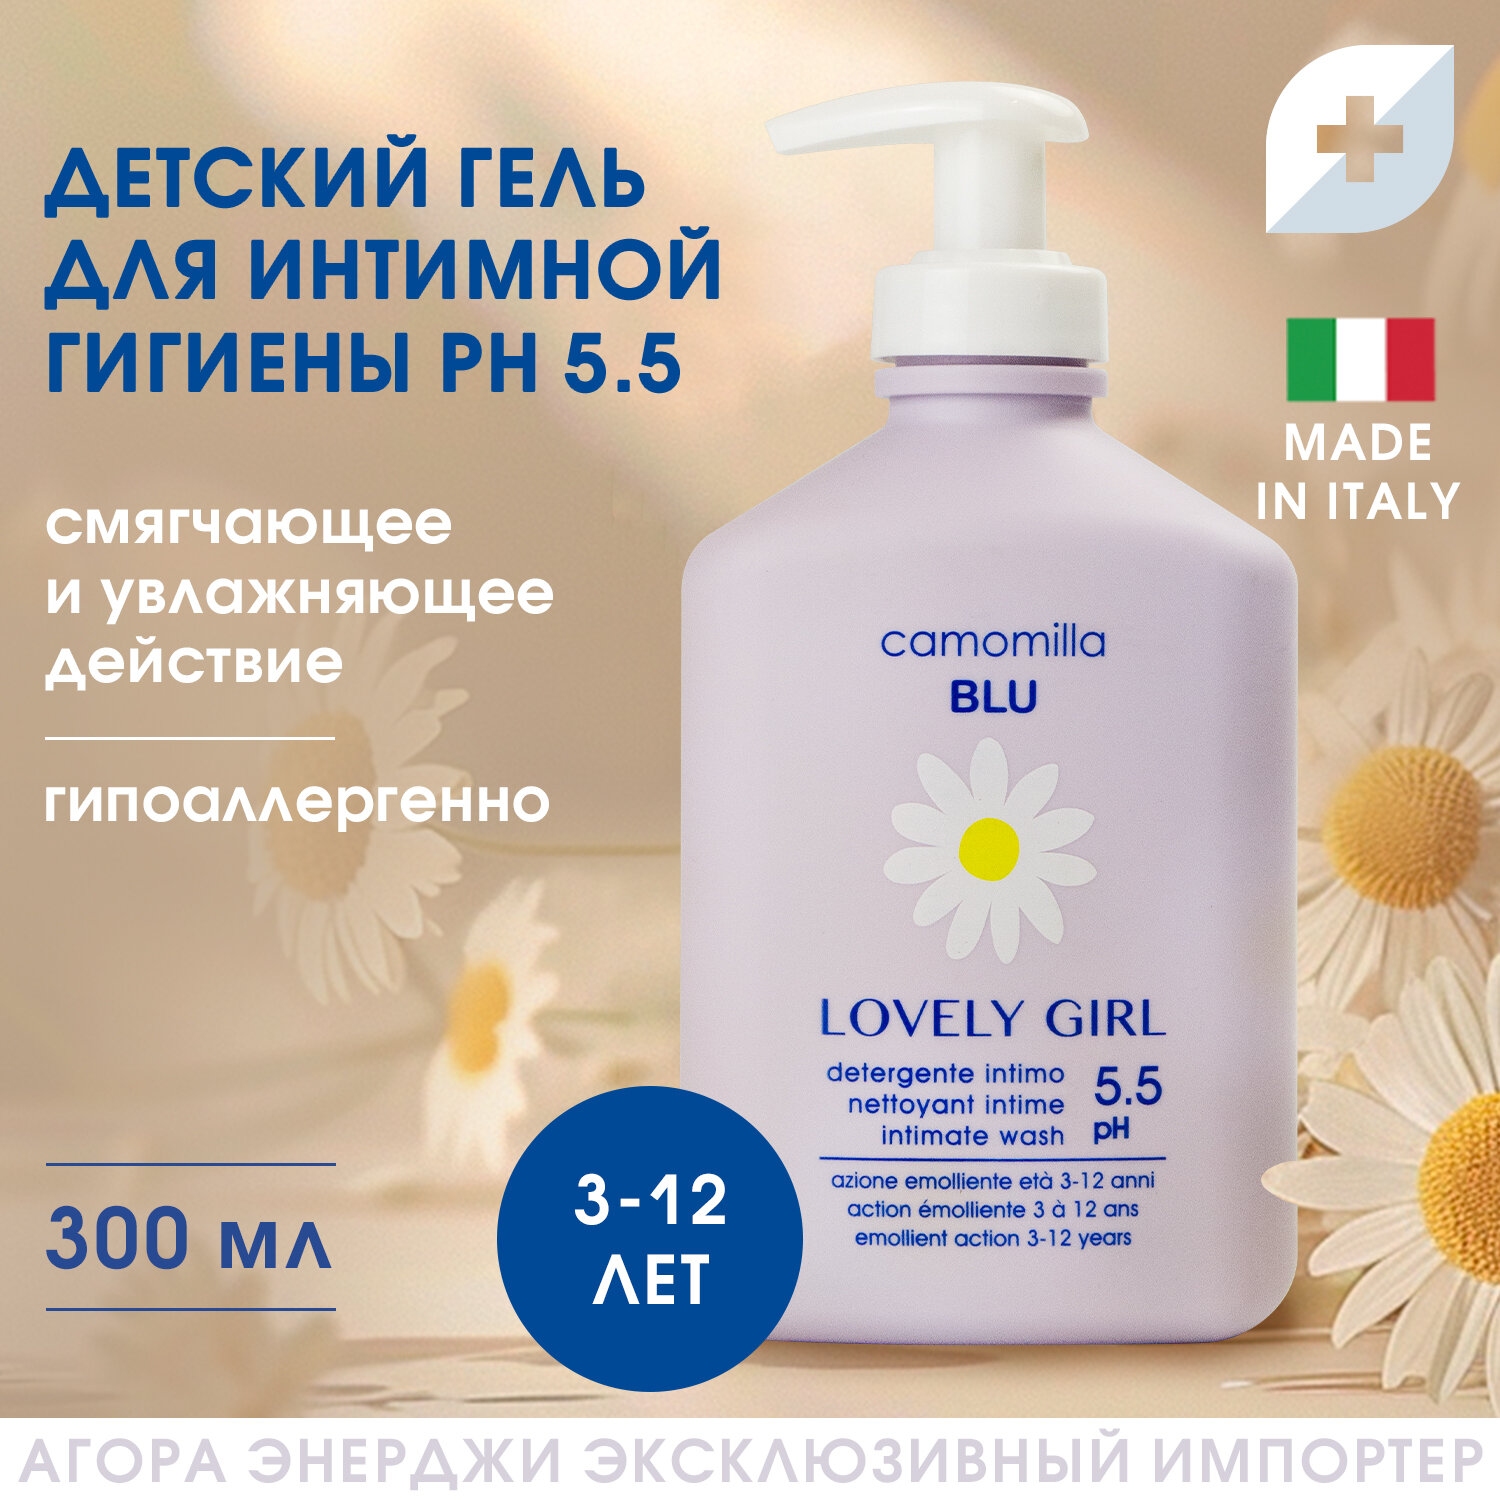 Гель Camomilla Blu для интимной гигиены для девочек 3-12 лет 300 мл